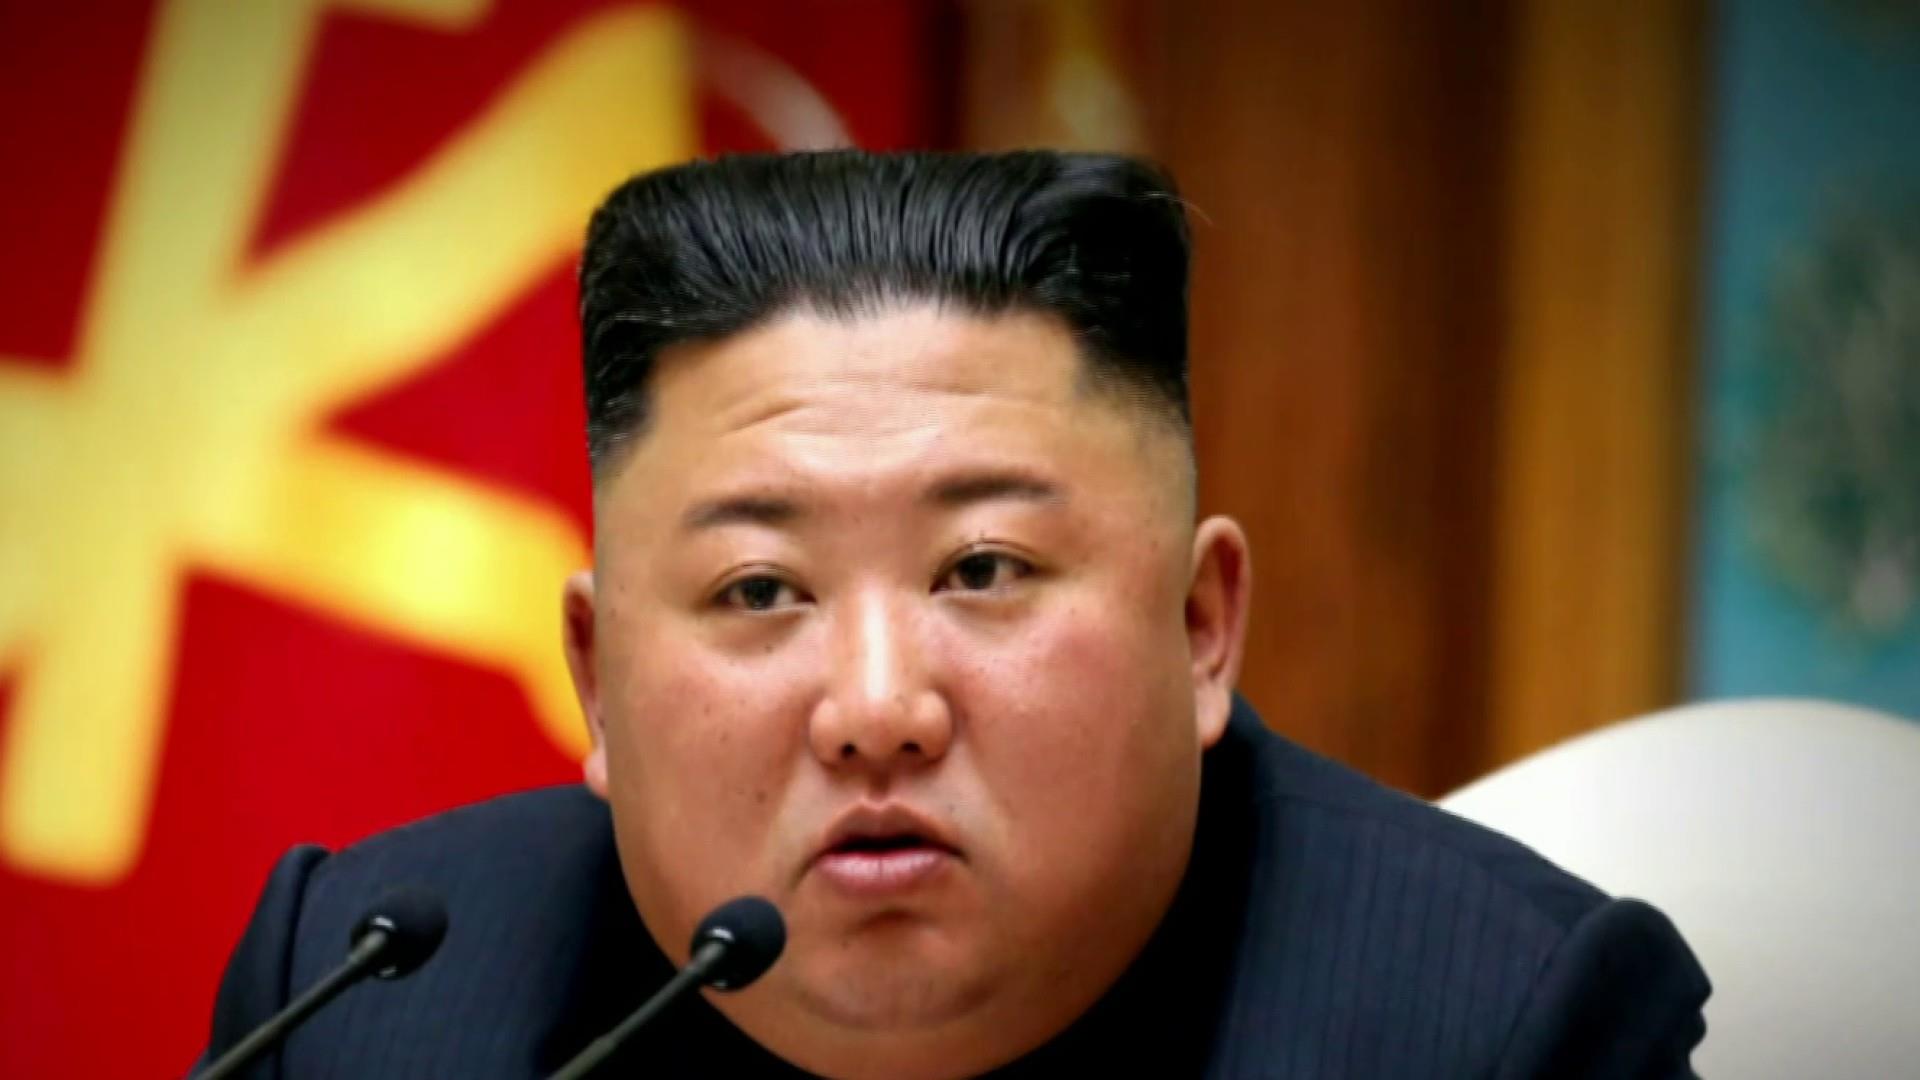 Kim Jong-un ar fi murit după ce a fost operat pe cord, presa susține că este în stare vegetativă